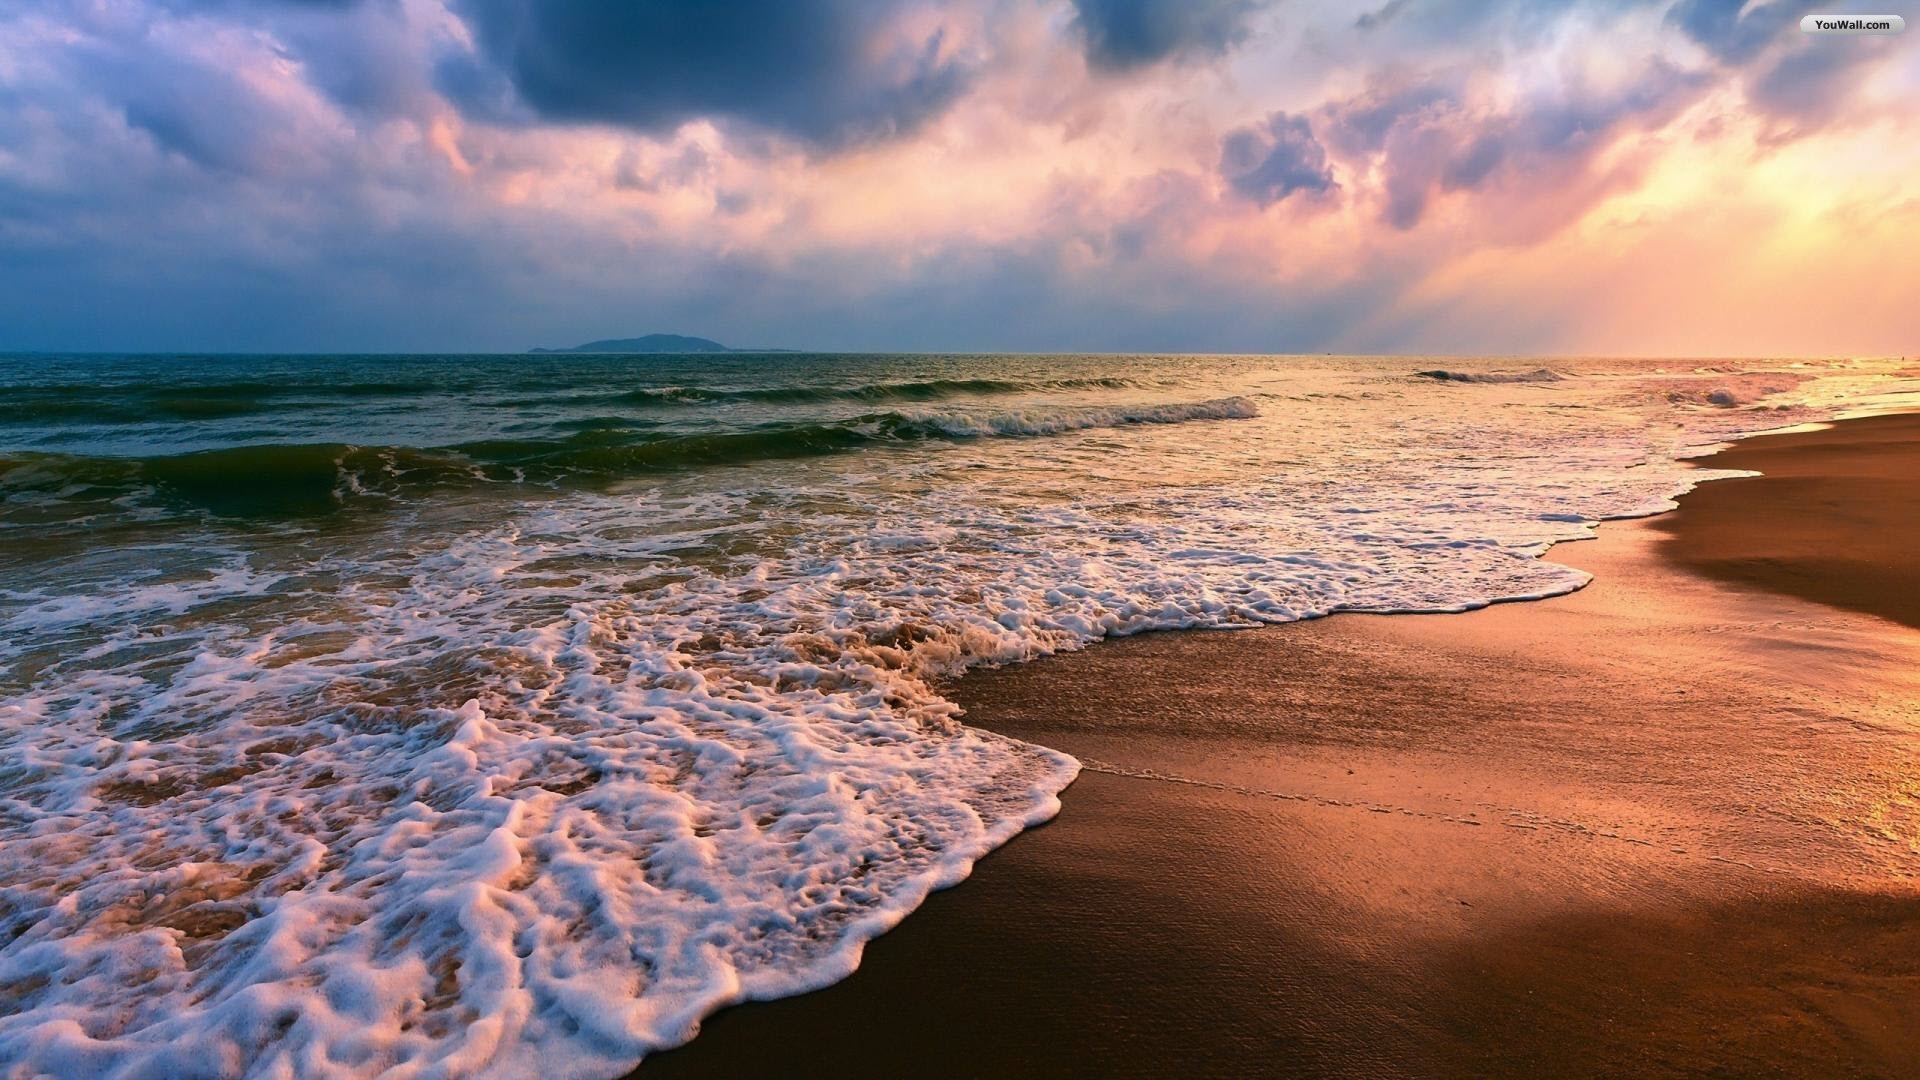 Free Download Beach Sunset Wallpaper 35 Desktop Images Of Beach Sunset